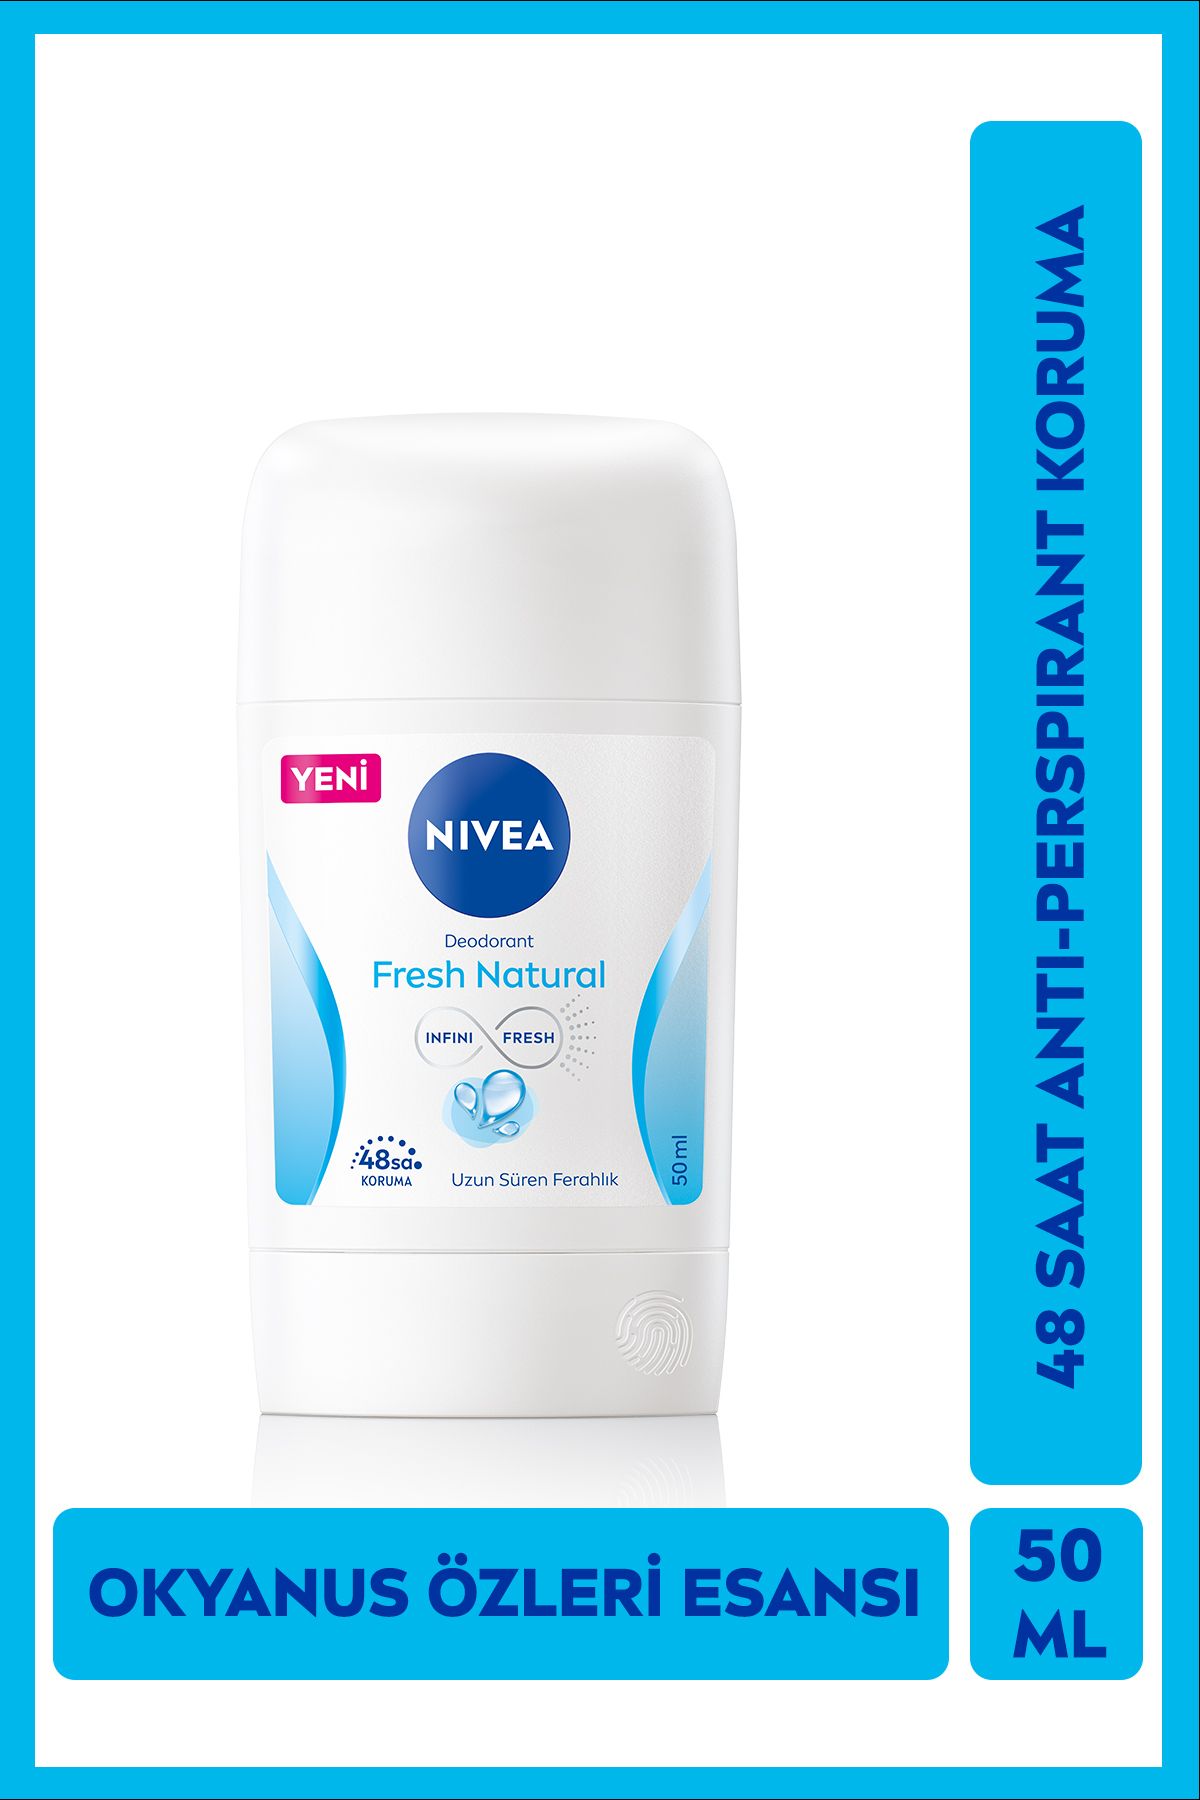 NIVEA Kadın Stick Deodorant Fresh Natural 48 Saat Deodorant Koruması 50 ml